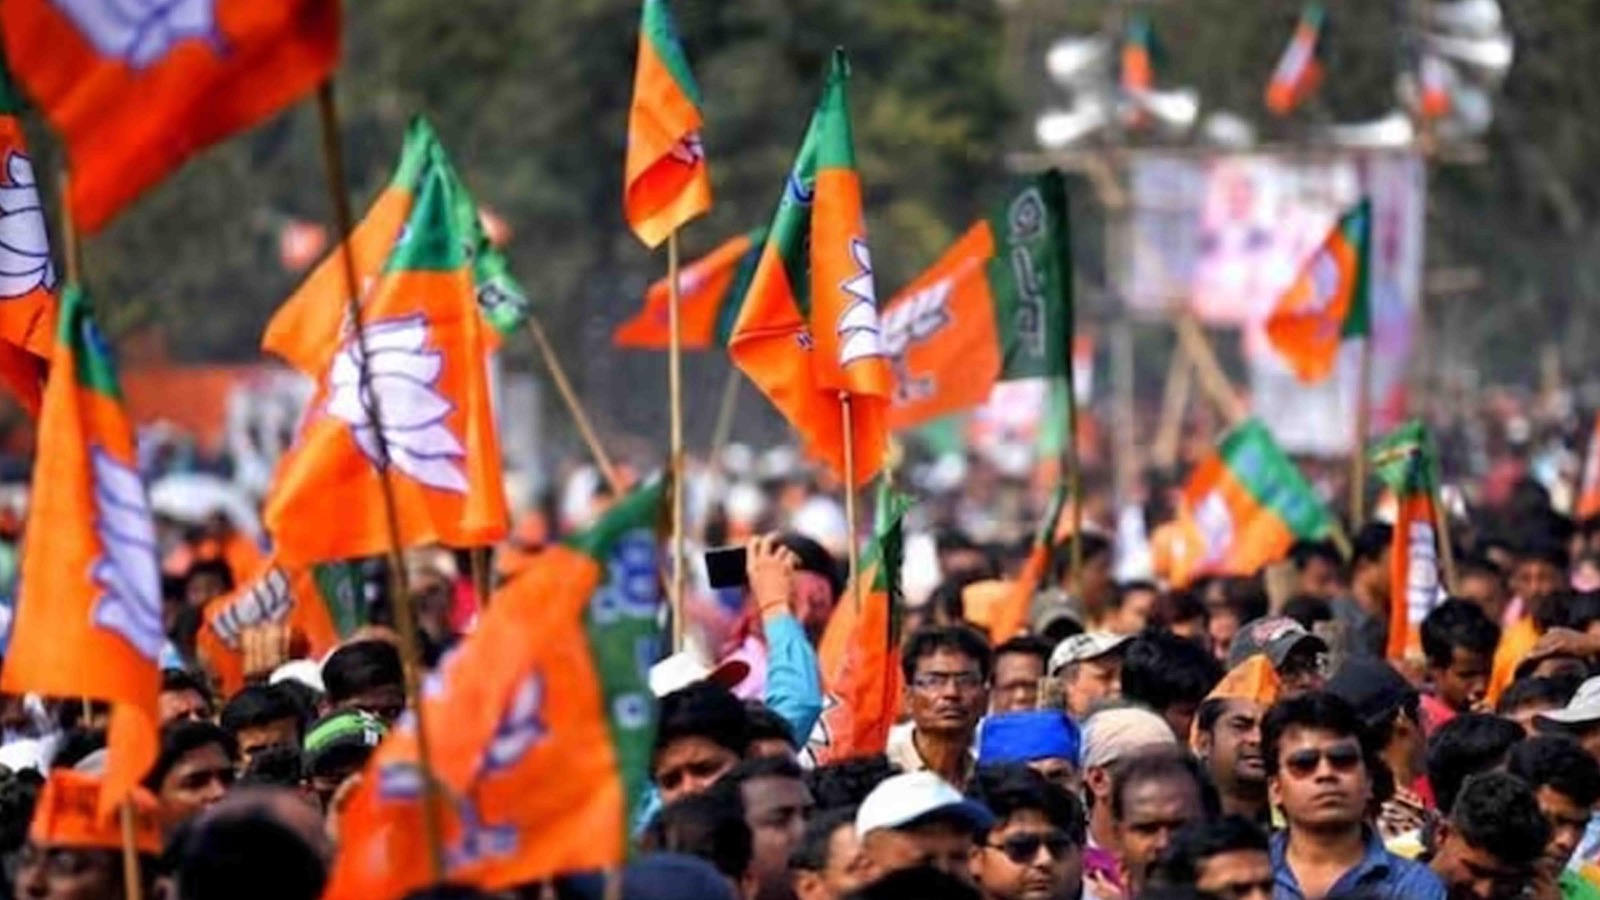 ஐந்து மாநில தேர்தல் – முதல் வேட்பாளர் பட்டியலை வெளிட்டது பாஜக